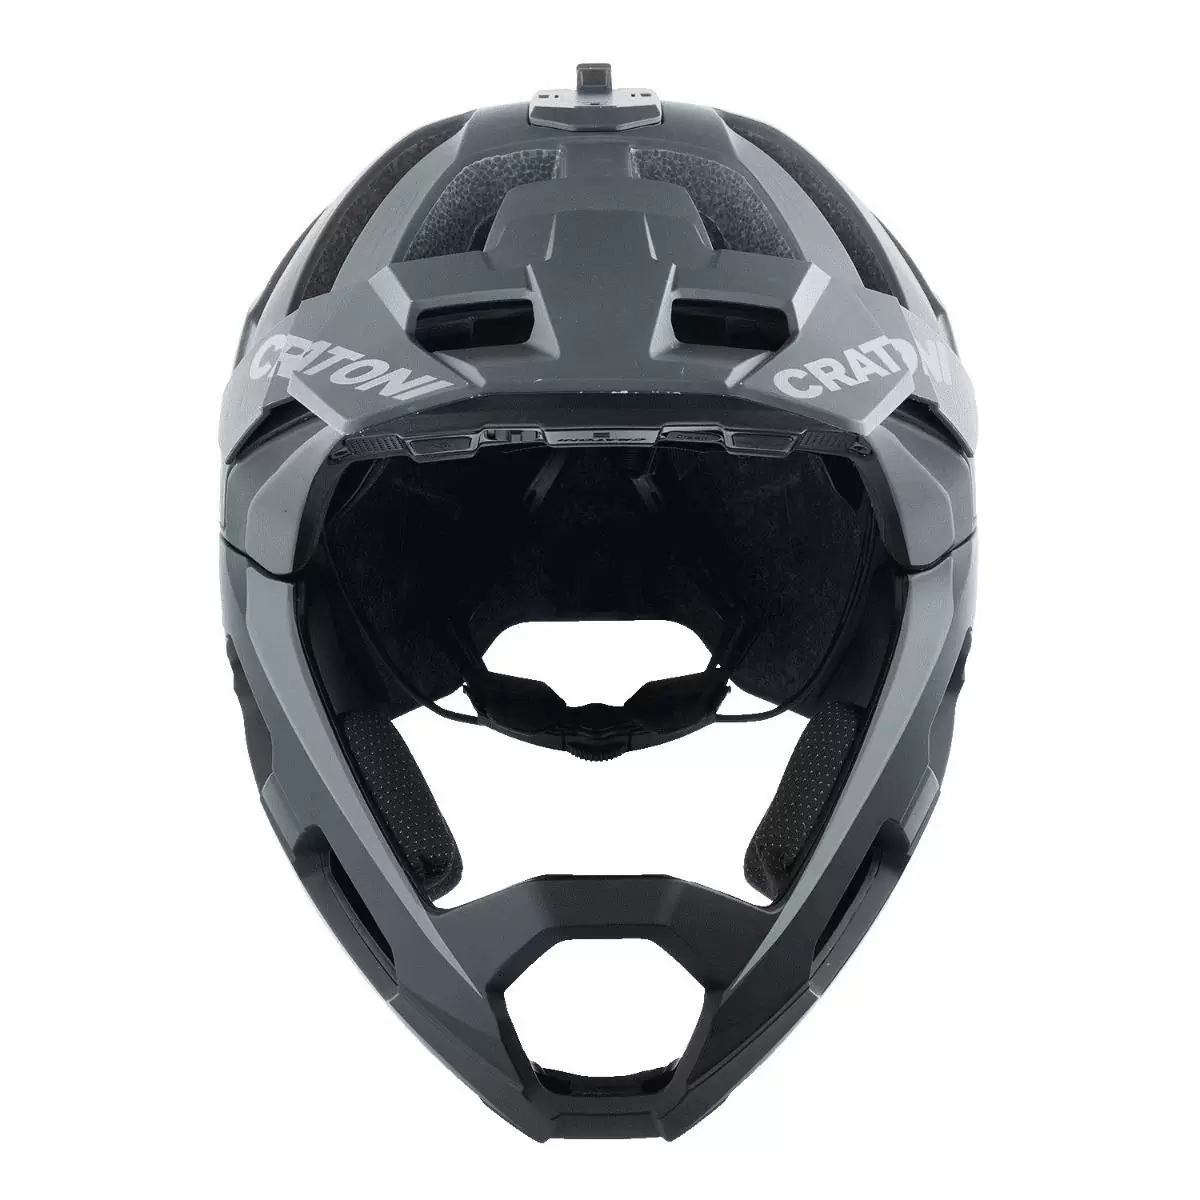 Madroc Pro Smart Helm Bluetooth schwarz Größe S/M (54-58cm) #3